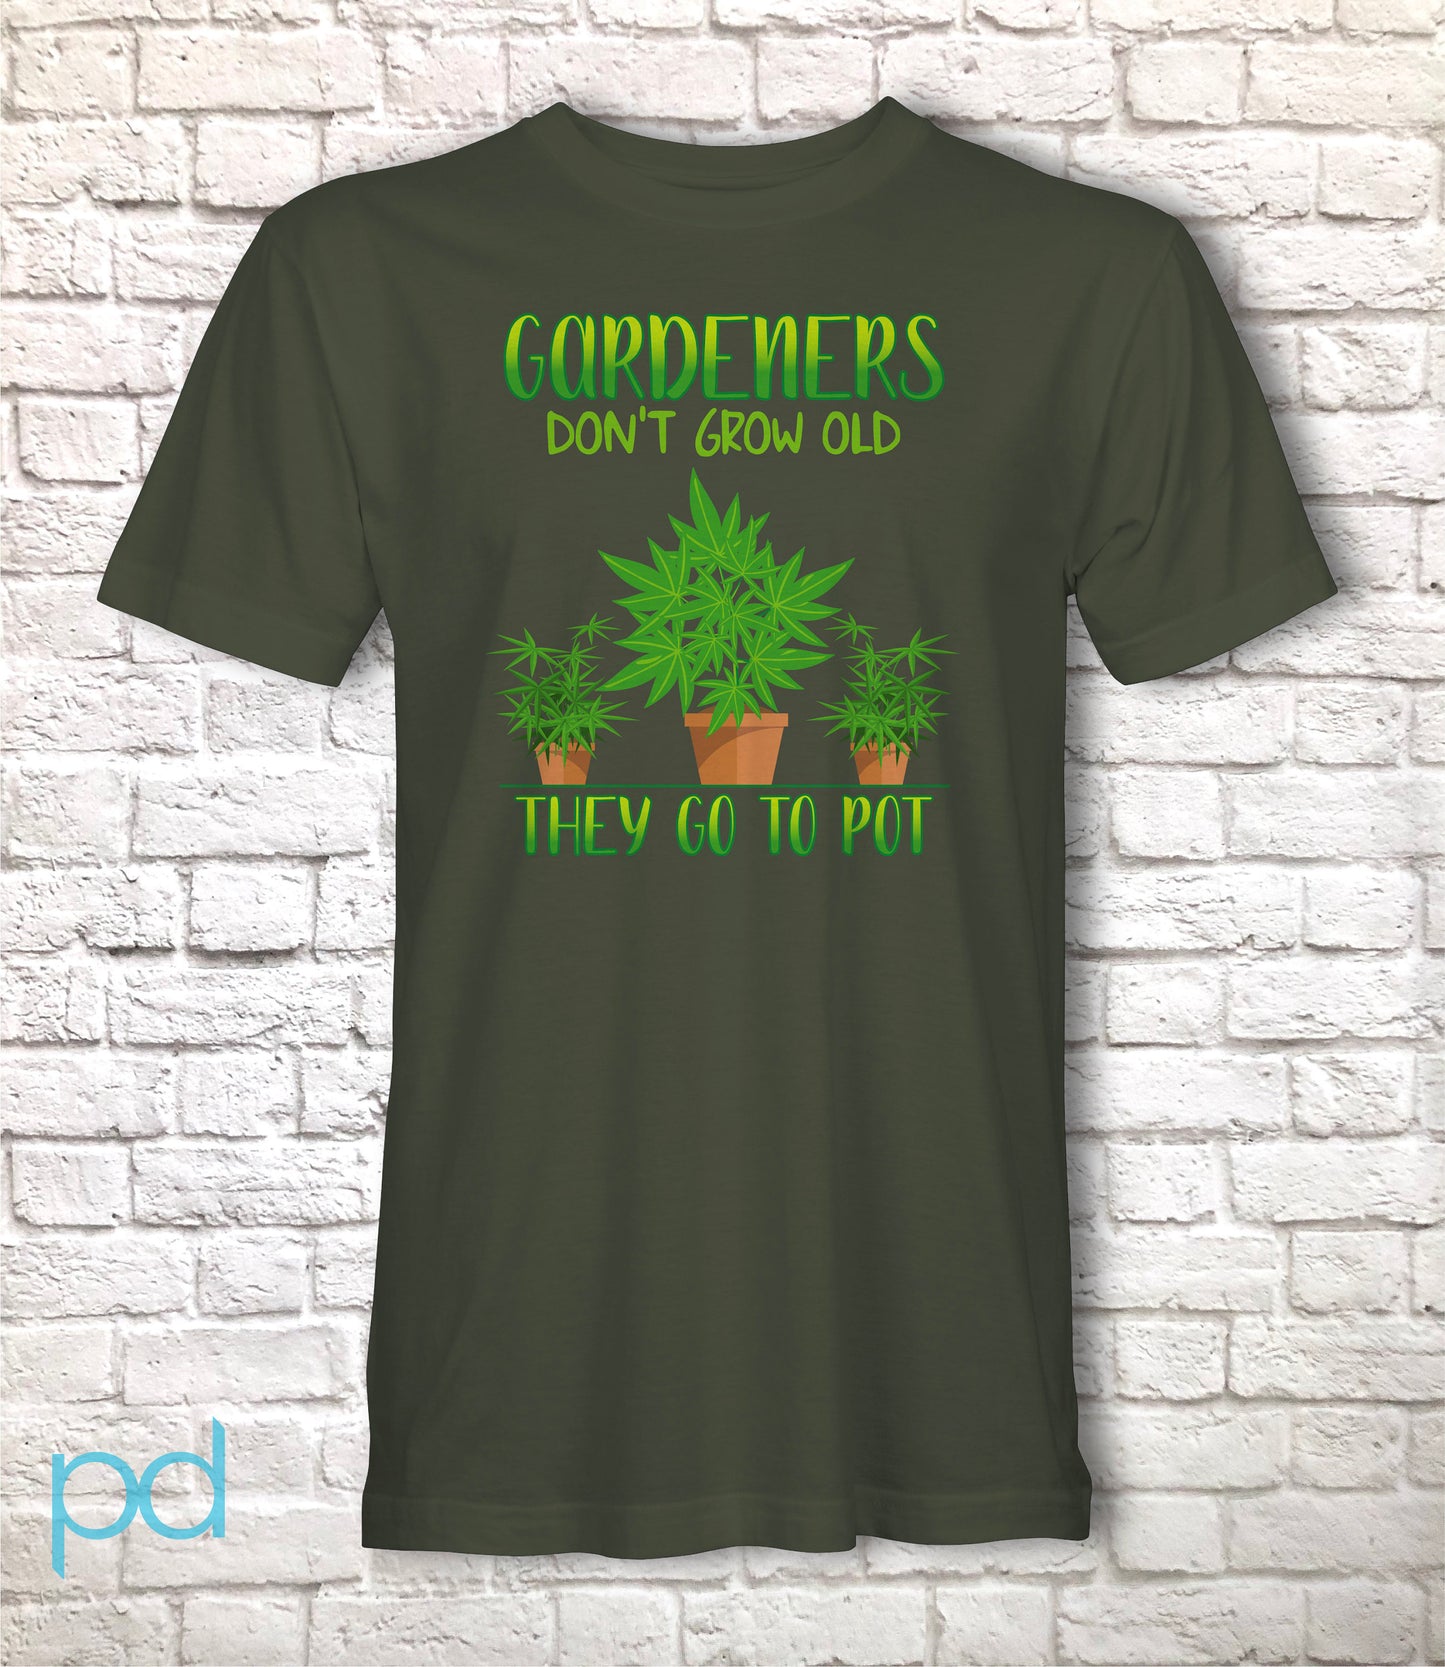 Funny Gardening T-Shirt, Gardeners Don&#39;t Grow Old They Go To Pot Pun Meme Gift Idea, Humorous Cannabis Pot Smoking Joke Tee Shirt T Top